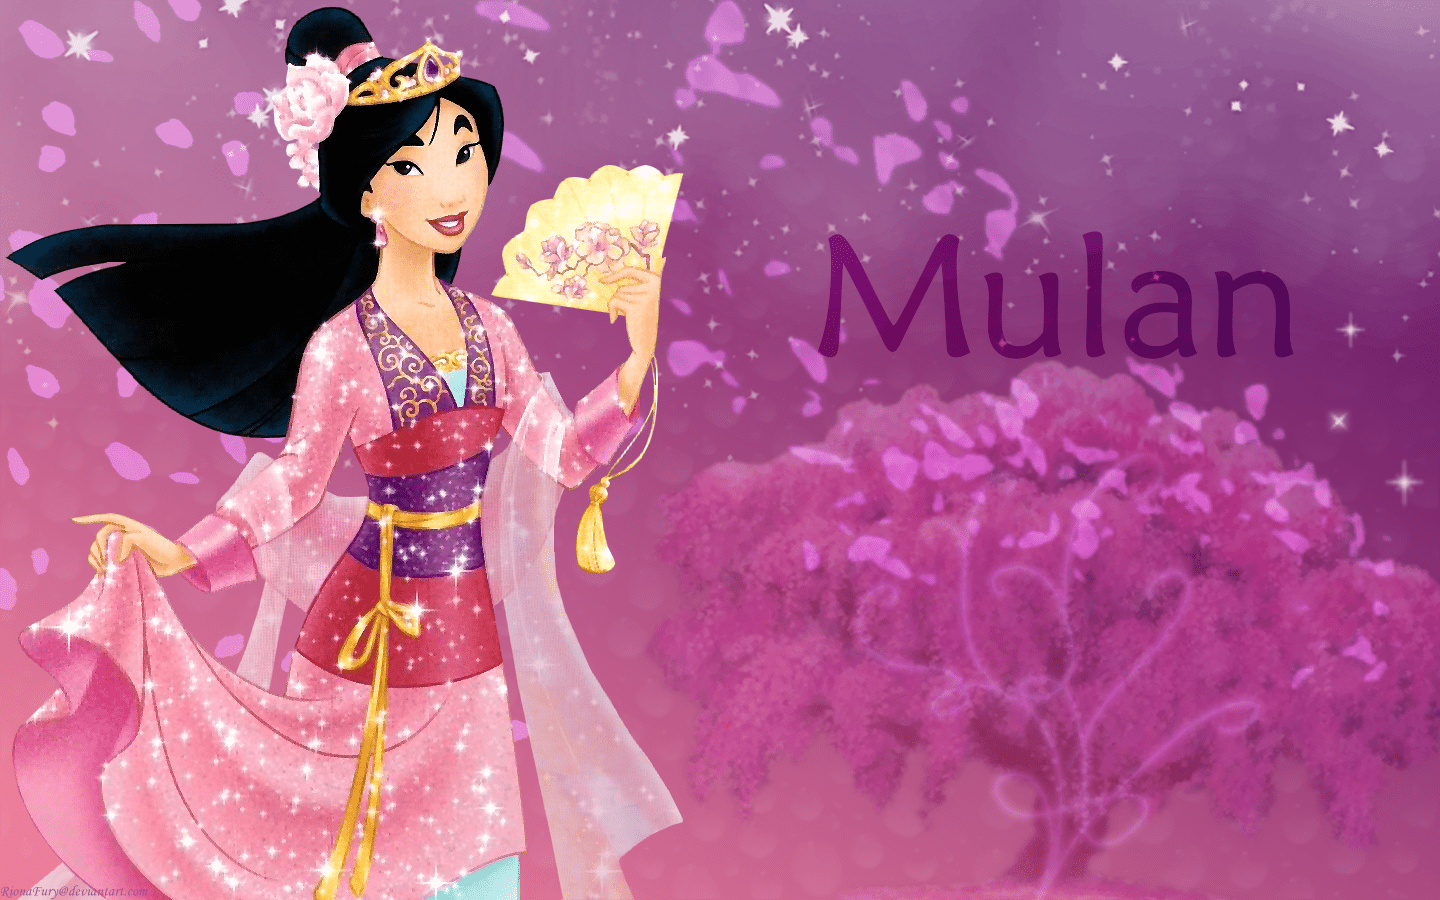 Disney princess mulan wallpaper - Mulan